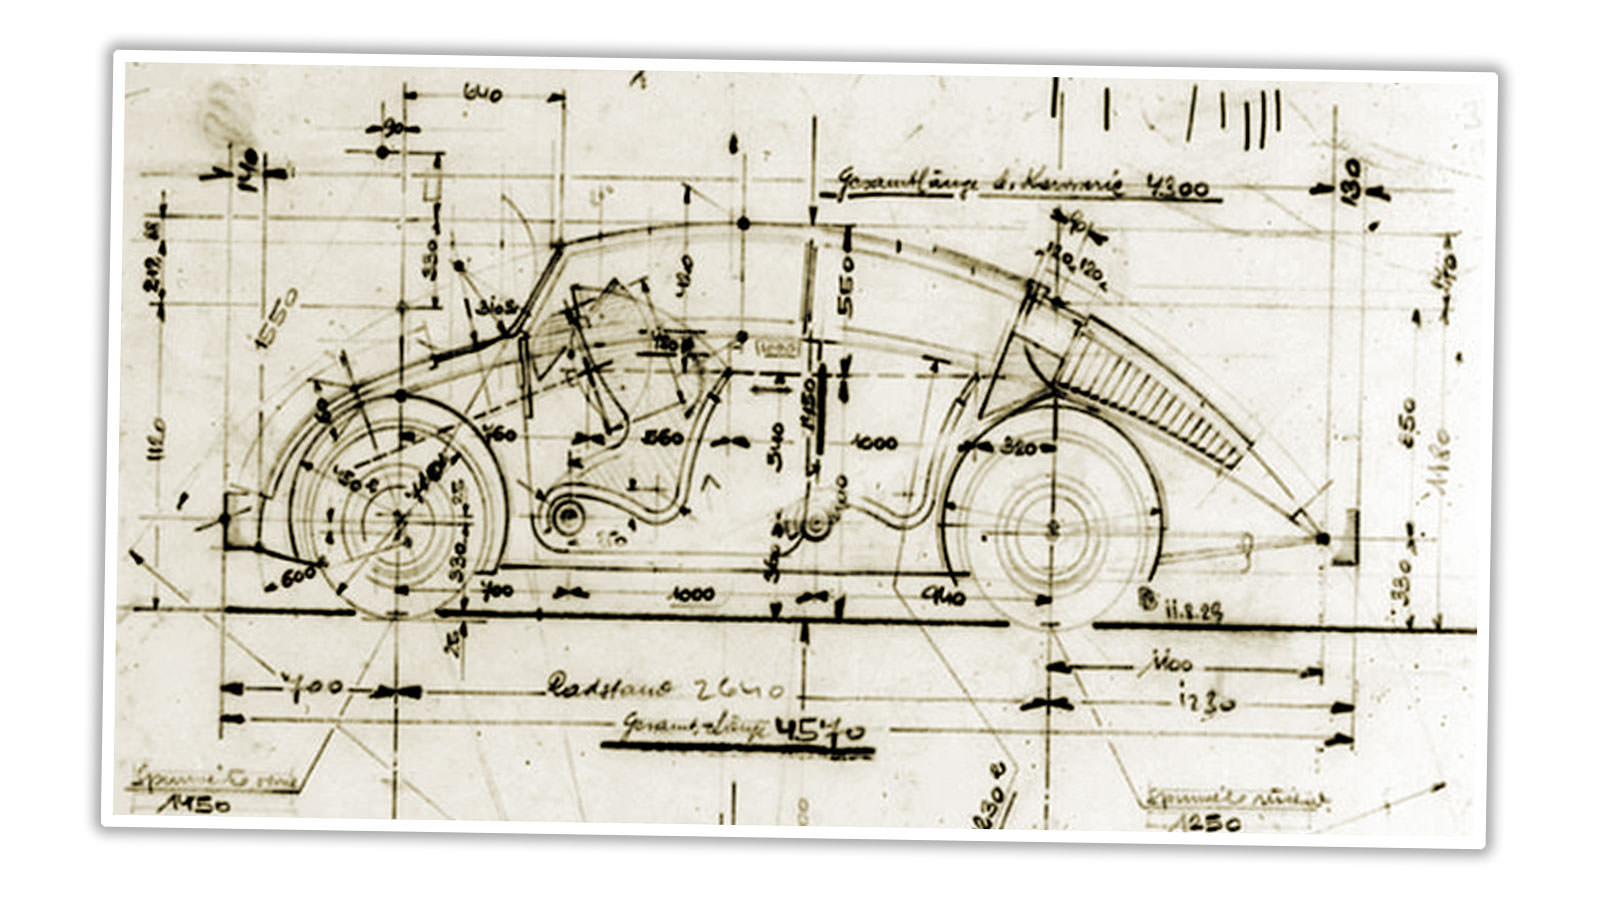 Технический рисунок дизайна автомобиля Белы Бареньи, который очень похож на дизайн VW Beetle.